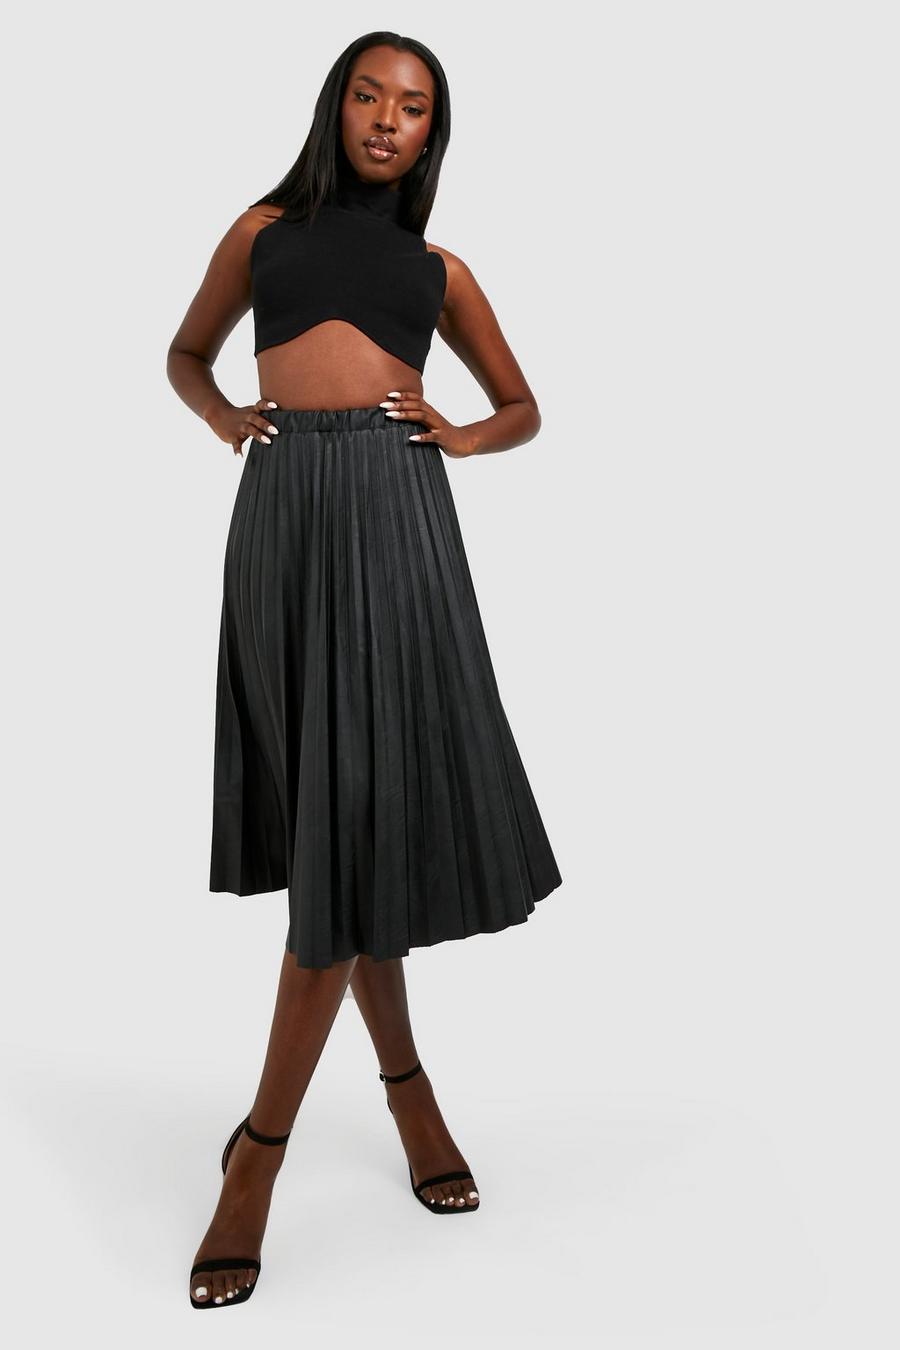 Black Faux Leather Pleated Midi Skirt